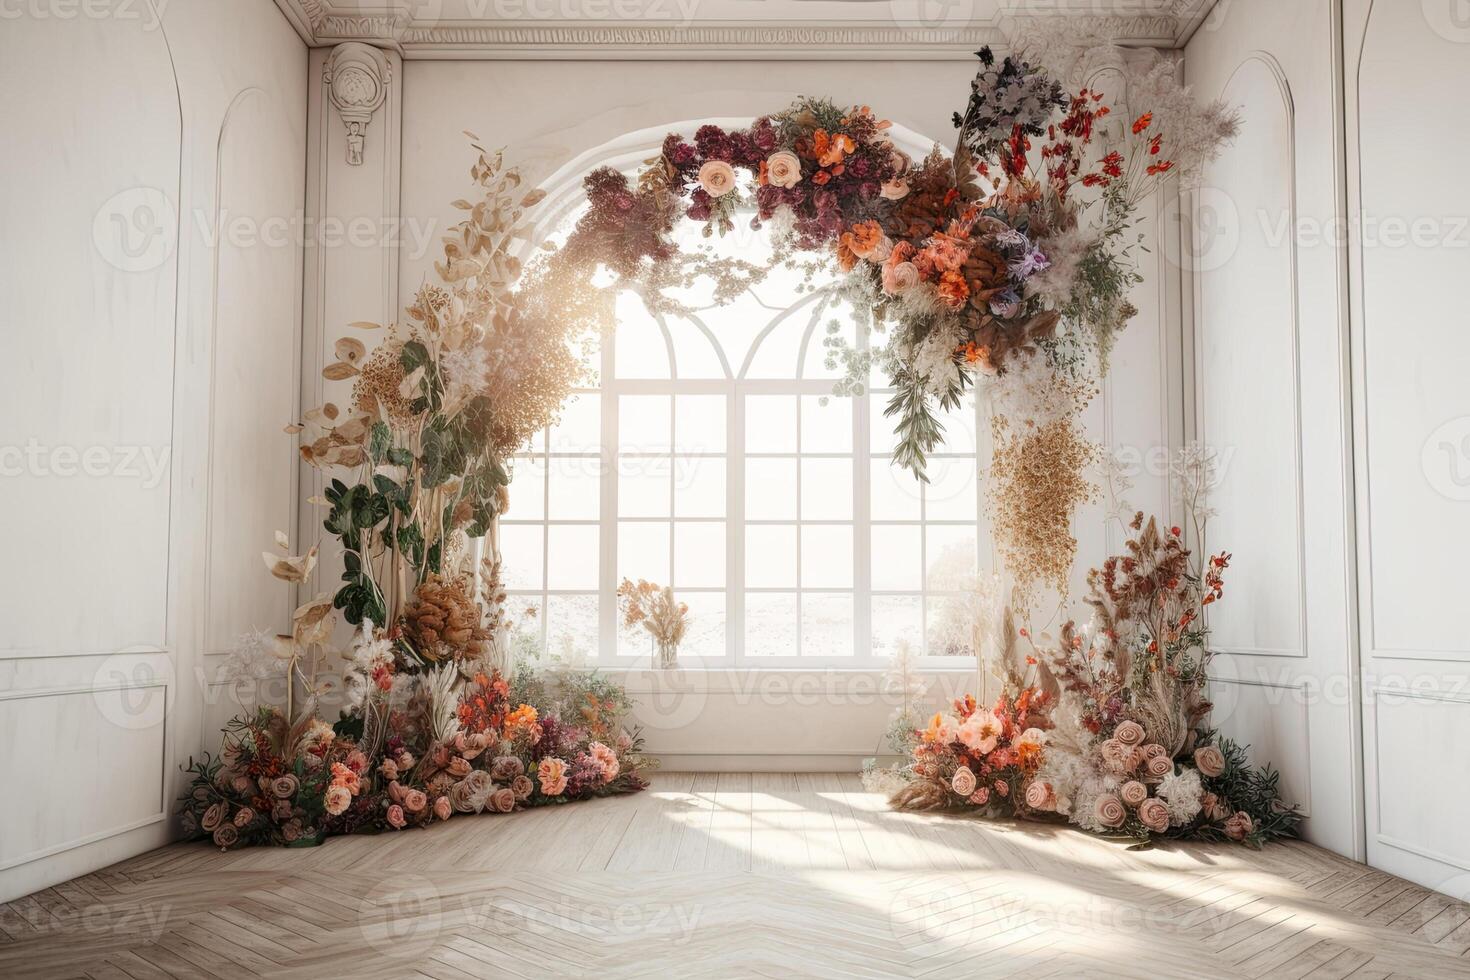 wedding backdrop aesthetic flower decoration indoor studio ...